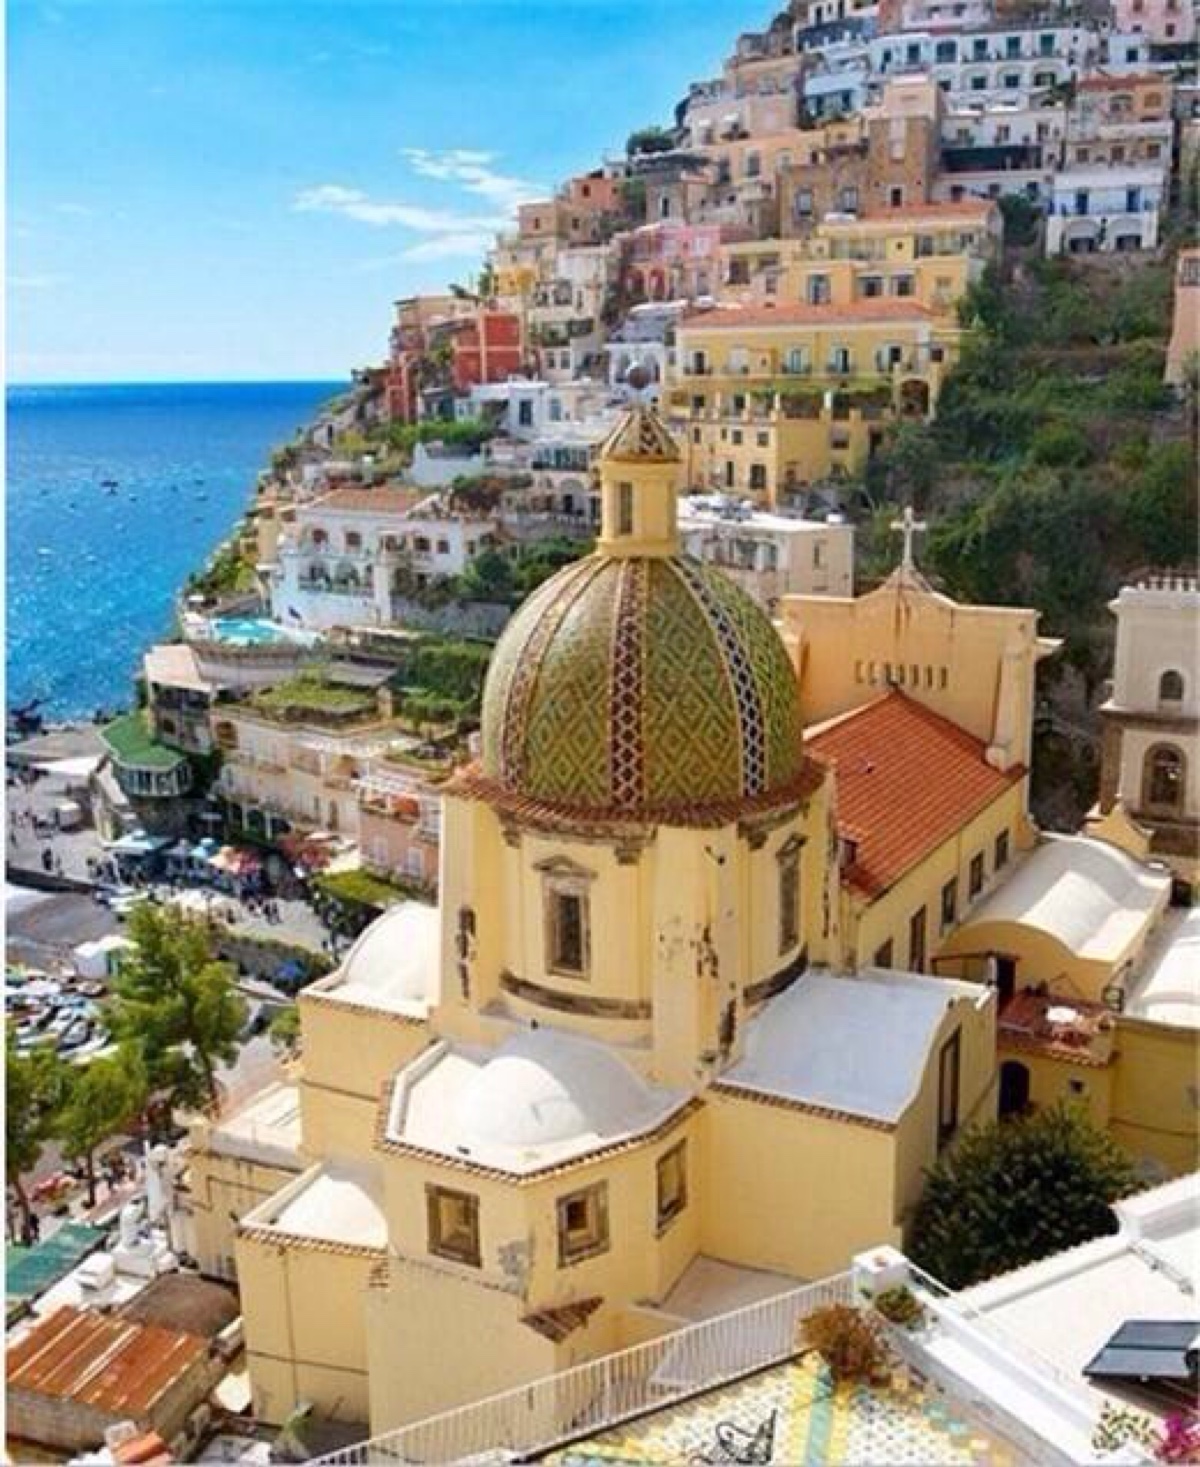 "南意大利地中海风格"的建筑特色是,拱门与半拱门,马蹄状的门窗.